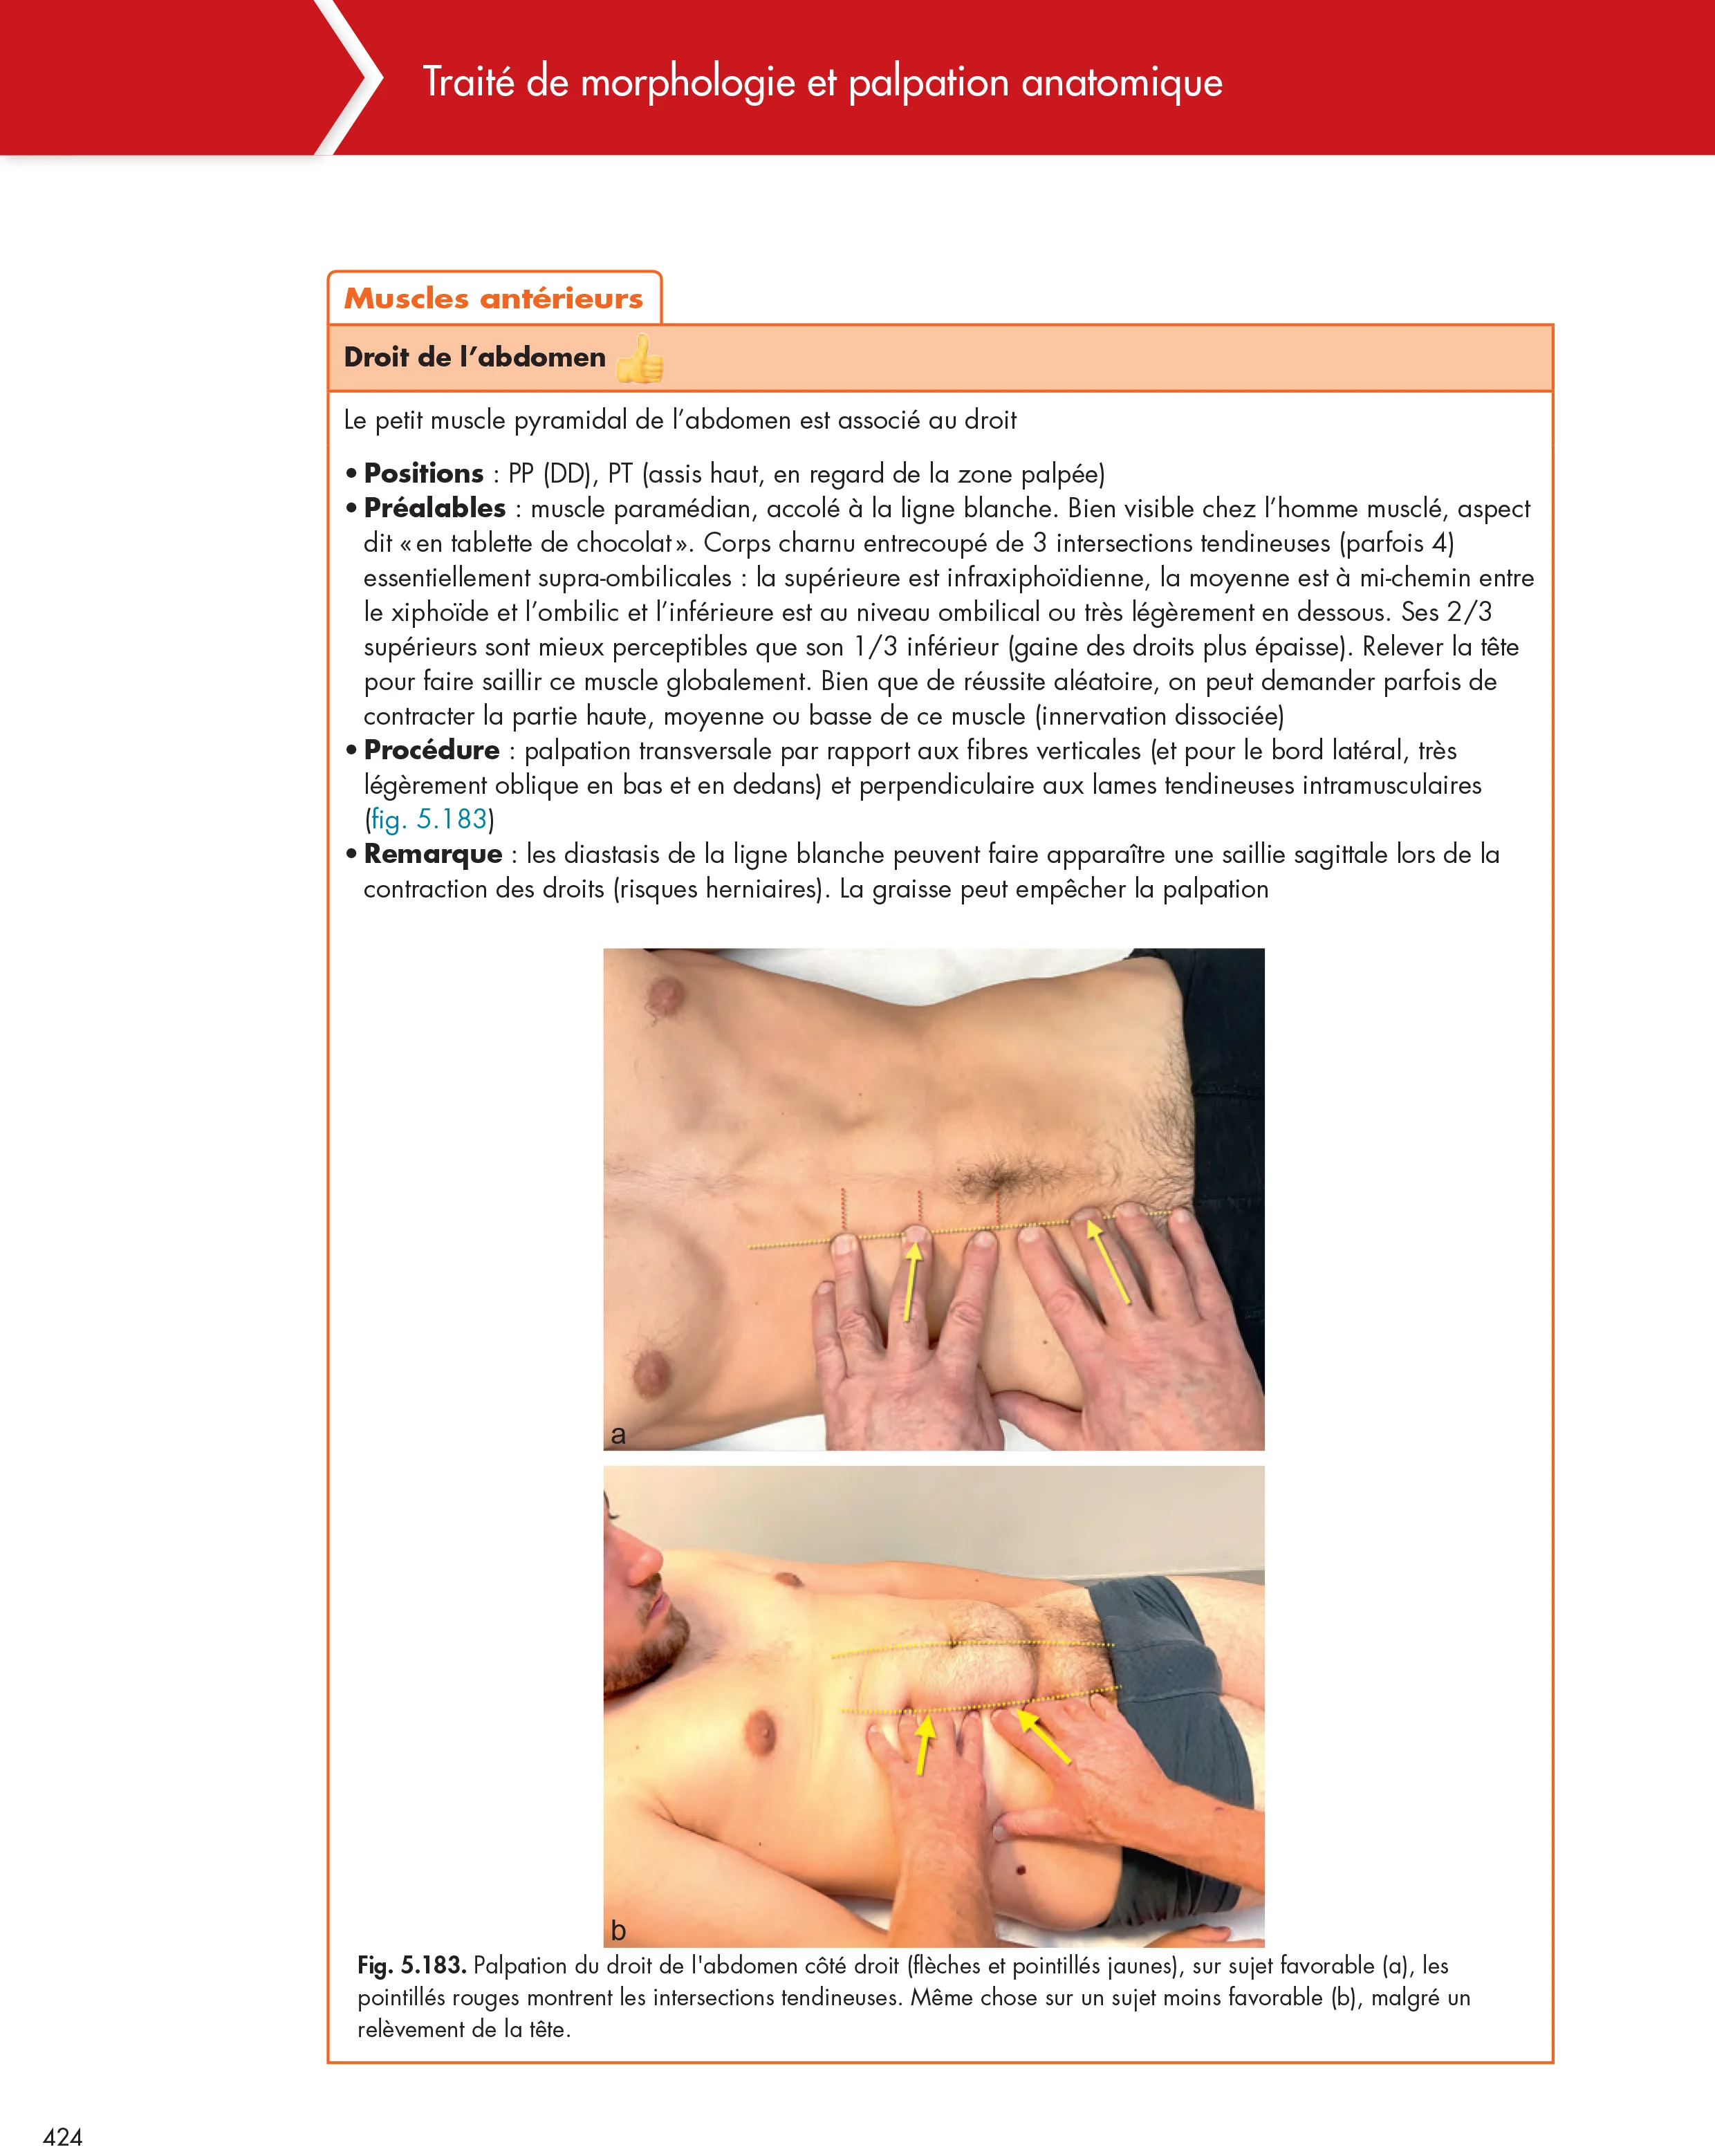 Chapitre 5 - Anatomie palpatoire des muscles